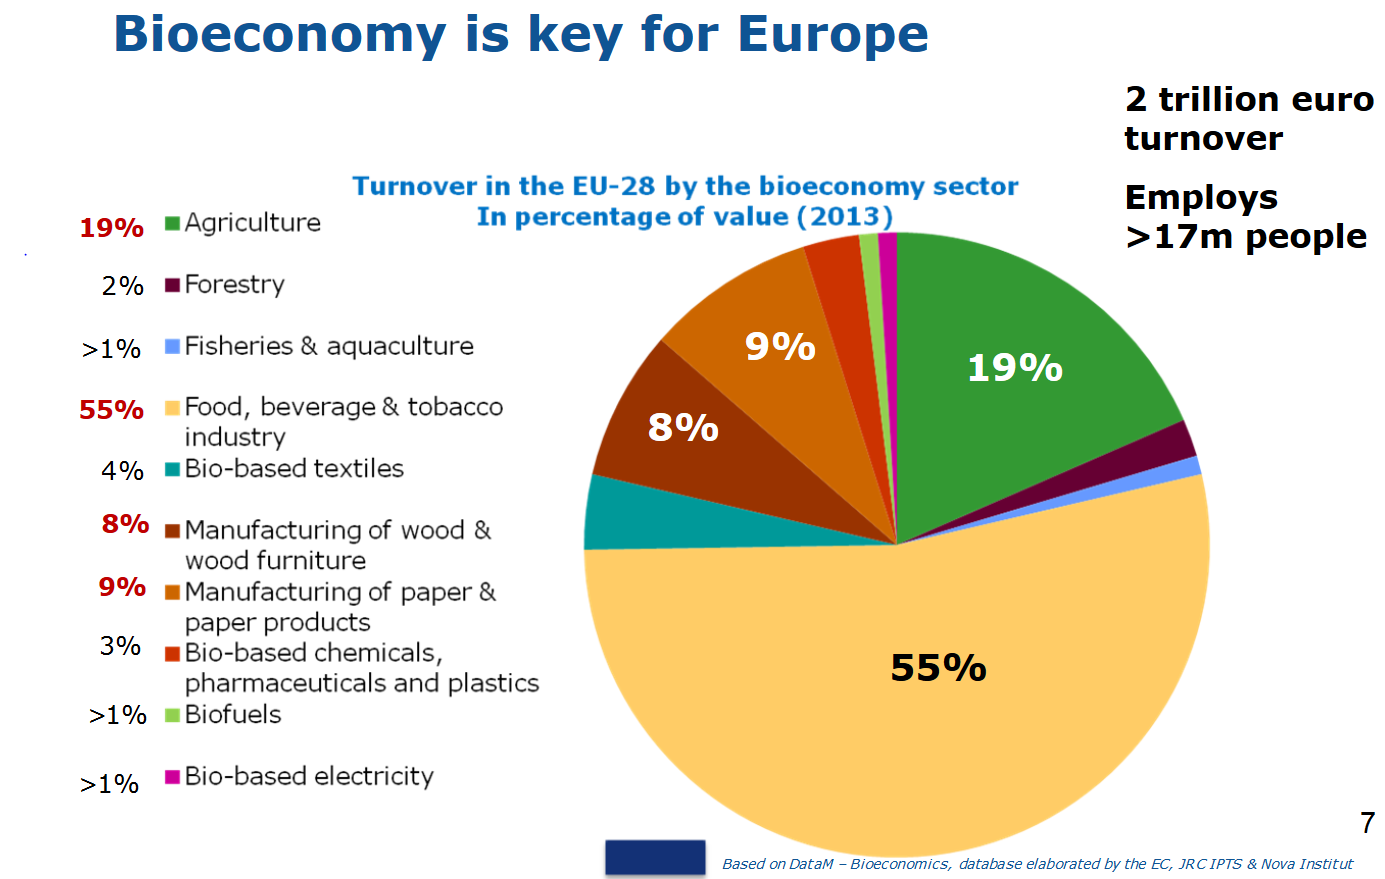 Biogospodarka kluczem dla Europy Obroty 2 biliony euro Rolnictwo Leśnictwo Obroty w UE-28